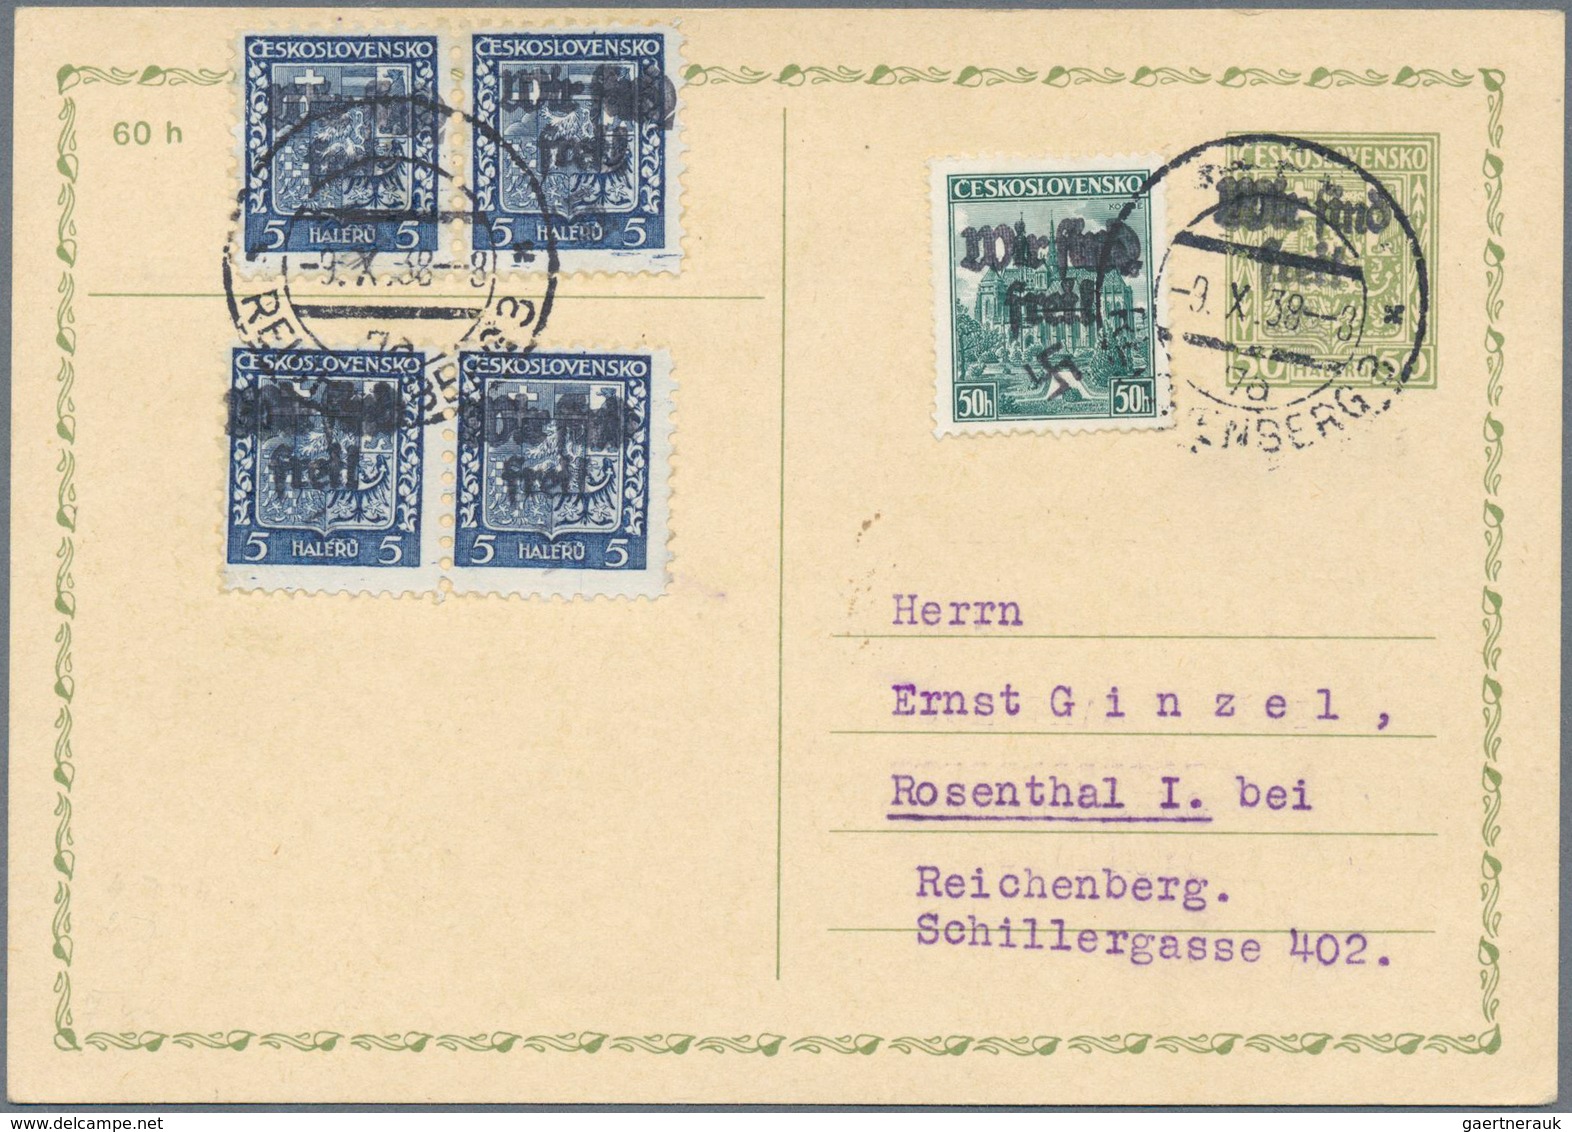 Sudetenland - Reichenberg: 1938, Frei-/Messemarke Mit Handstempelaufdruck "Wir Sind Frei!" Auf GA-Po - Sudetenland